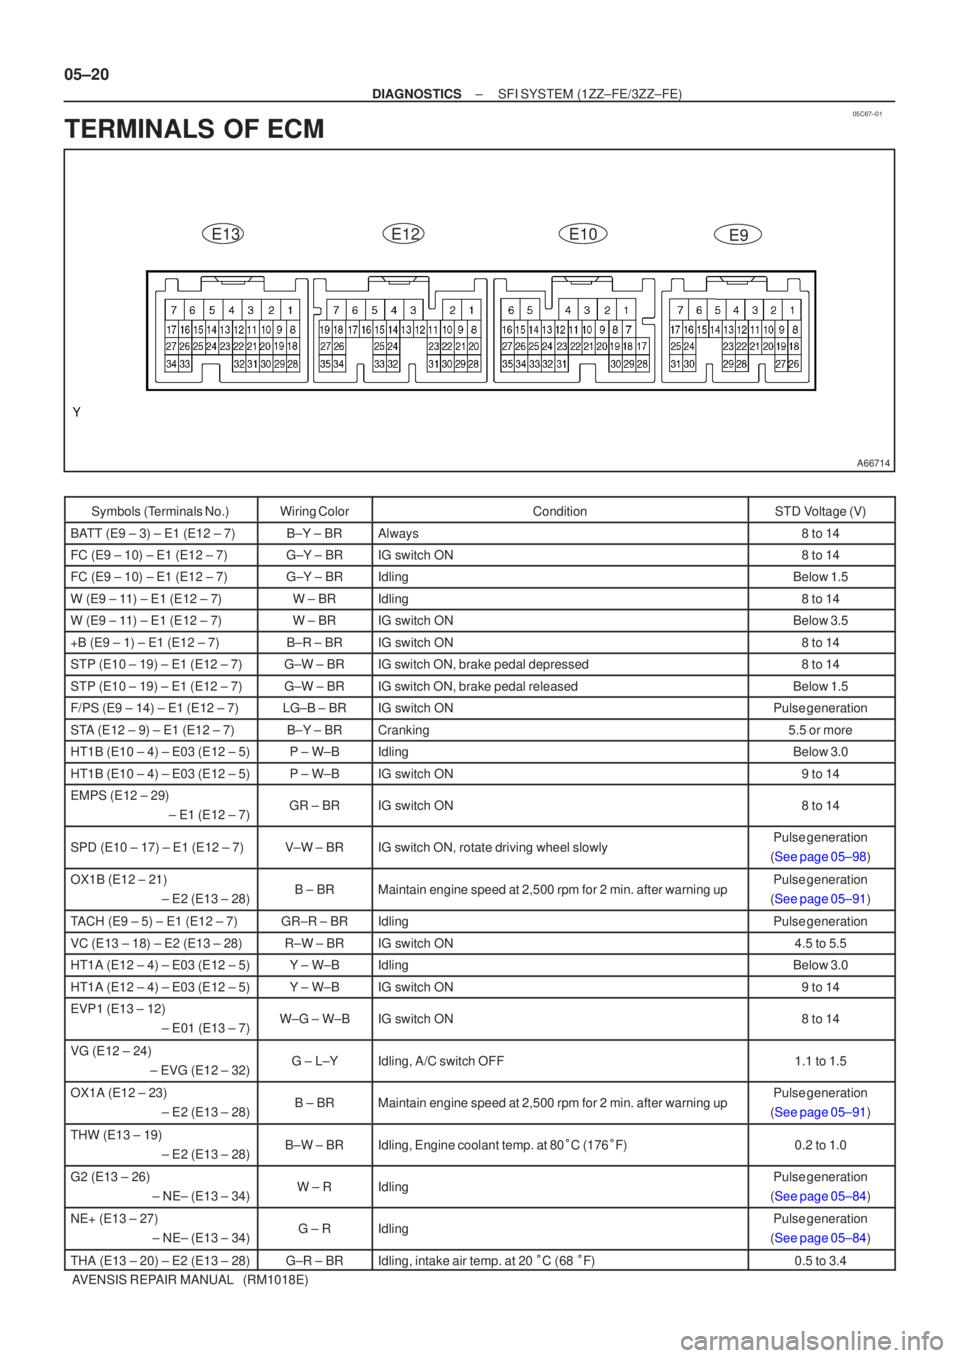 TOYOTA AVENSIS 2005  Service Repair Manual 05C67±01
A66714
E13E12E10E9
05±20
±
DIAGNOSTICS SFI SYSTEM(1ZZ±FE/3ZZ±FE)
AVENSIS REPAIR MANUAL   (RM1018E)
TERMINALS OF ECM
Symbols (Terminals No.)Wiring ColorConditionSTD Voltage (V)
BATT (E9 �